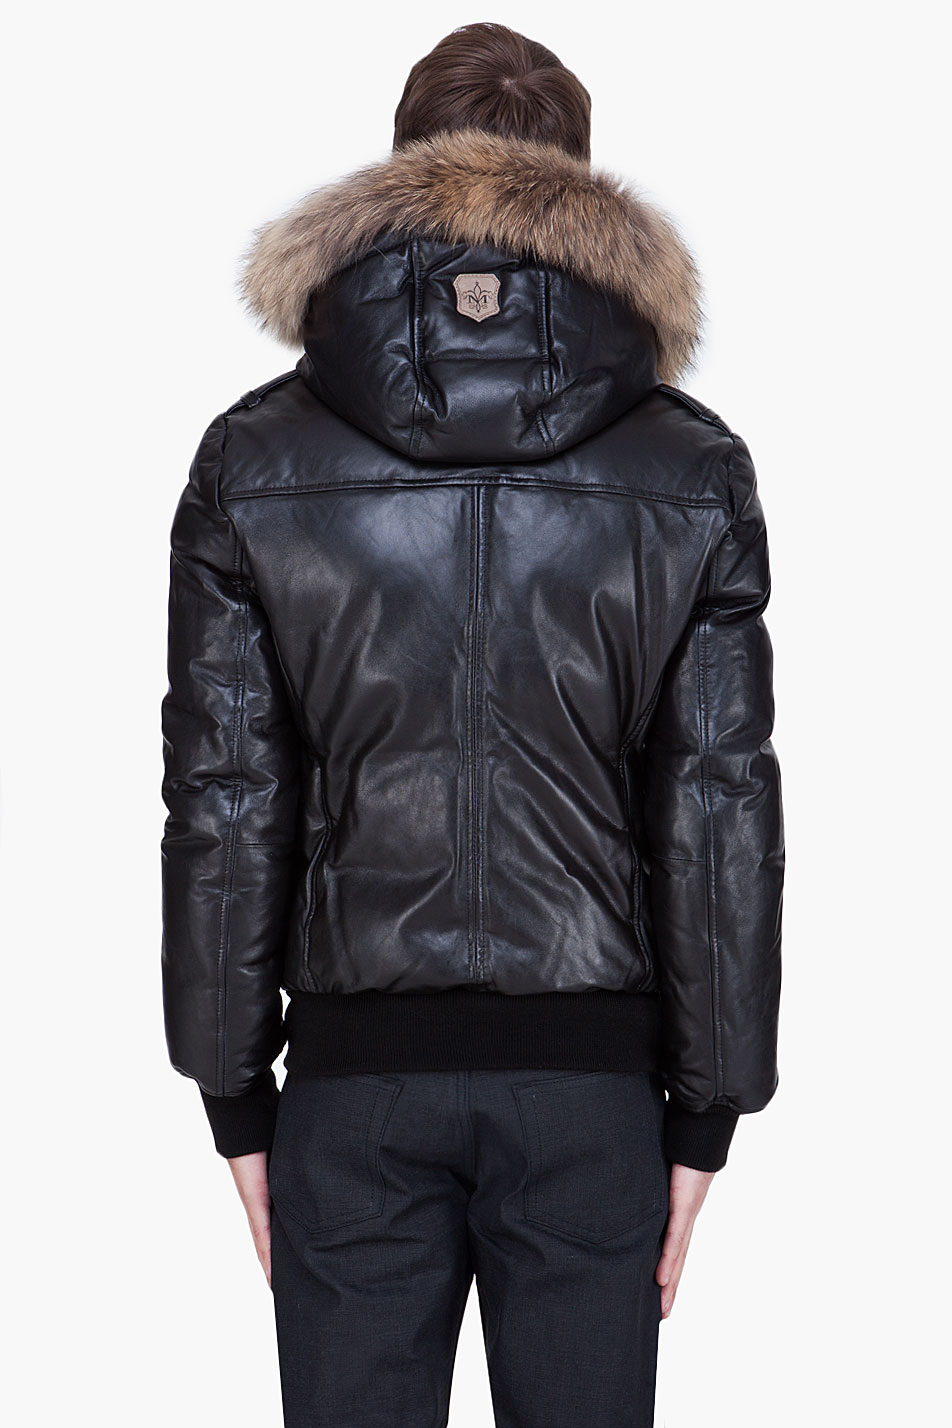 Mackage Leather Raccoon Fur Hood Shanu Jacket in Black for Men - Lyst